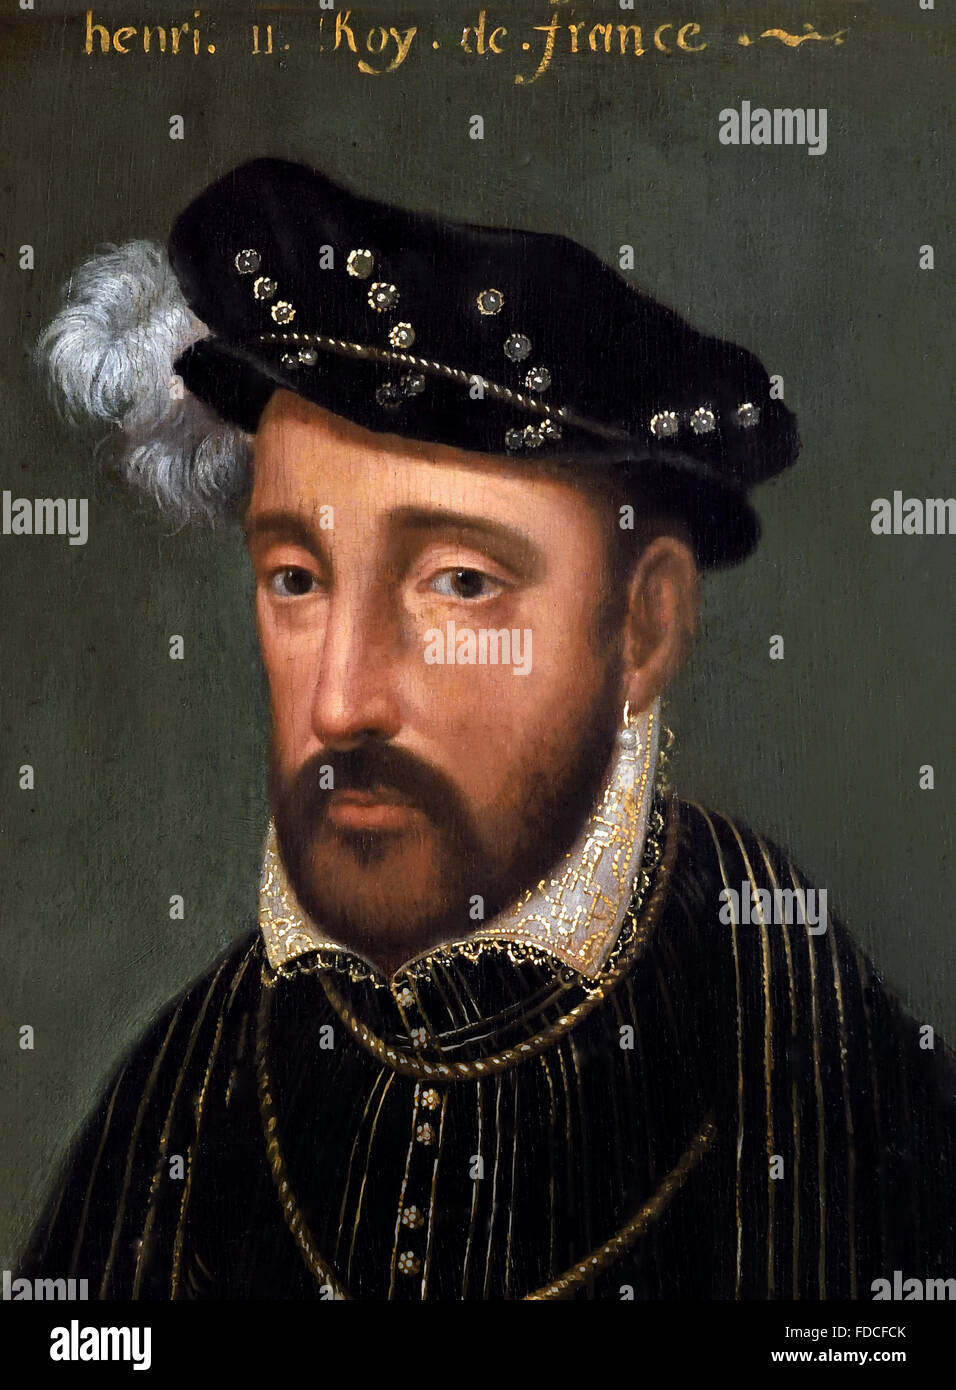 Porträt von König Heinrich II. - Heinrich II. König von Frankreich Heinrich II. (Französisch: Henri II.; 31. März 1519 – 10. Juli 1559) Stockfoto